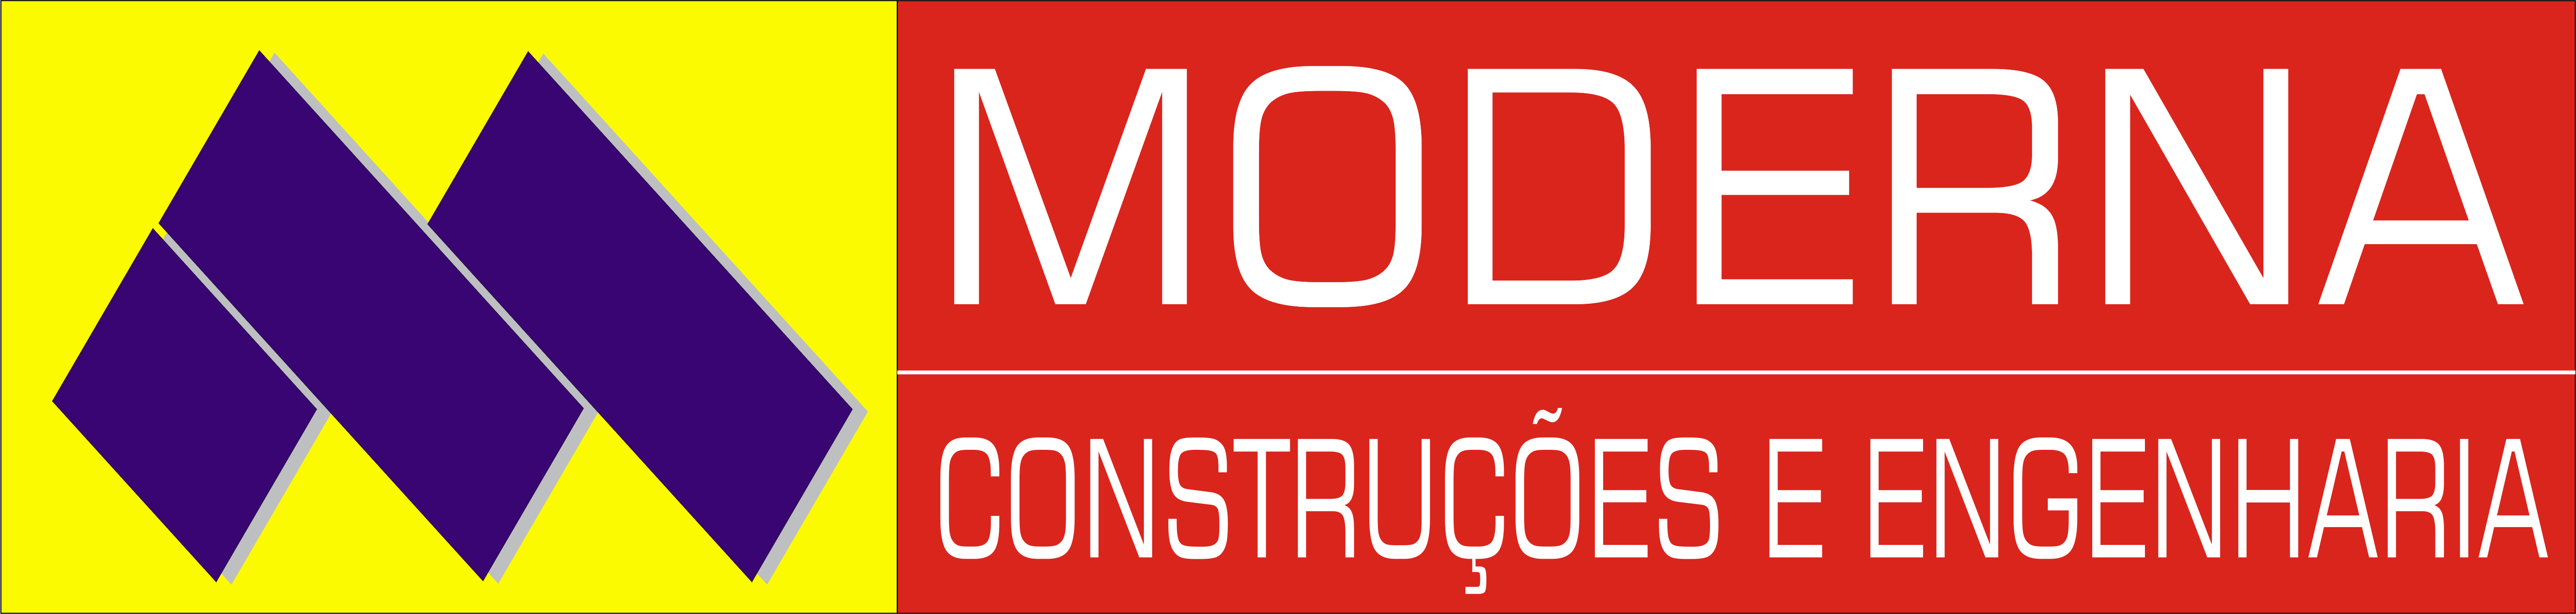 Logo_Moderna_Engenharia